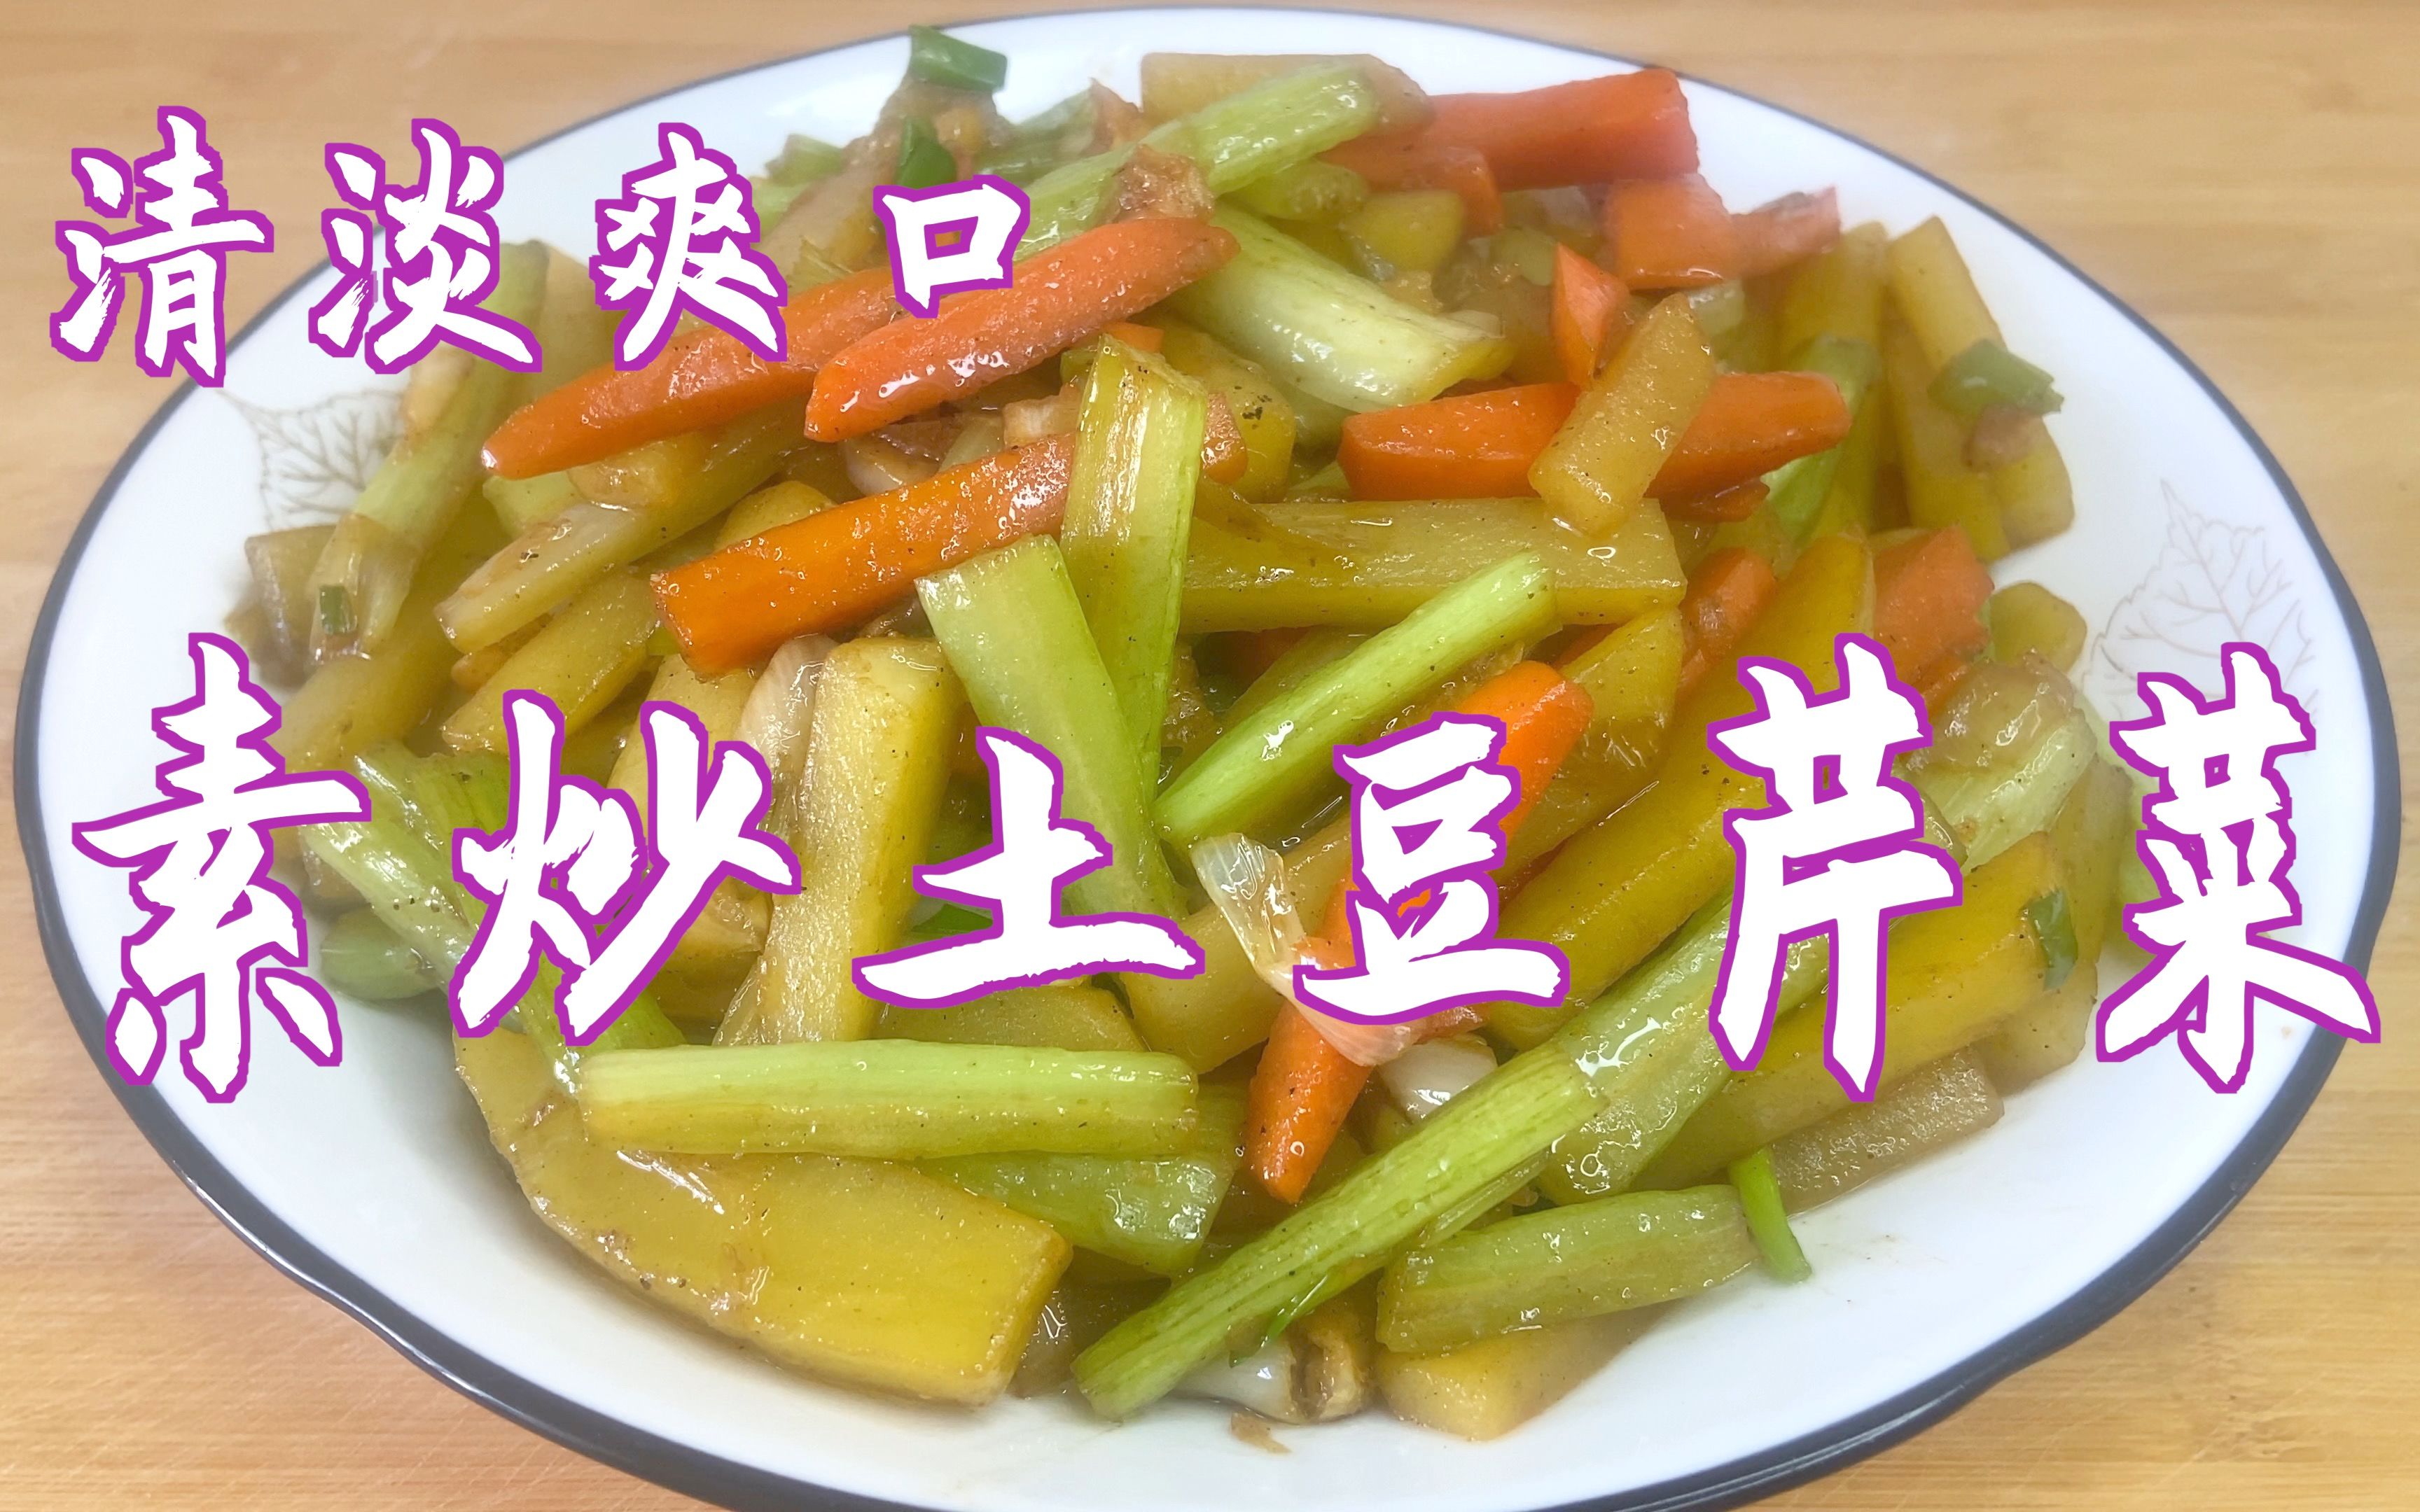 芹菜炒豆干,芹菜炒豆干的家常做法 - 美食杰芹菜炒豆干做法大全